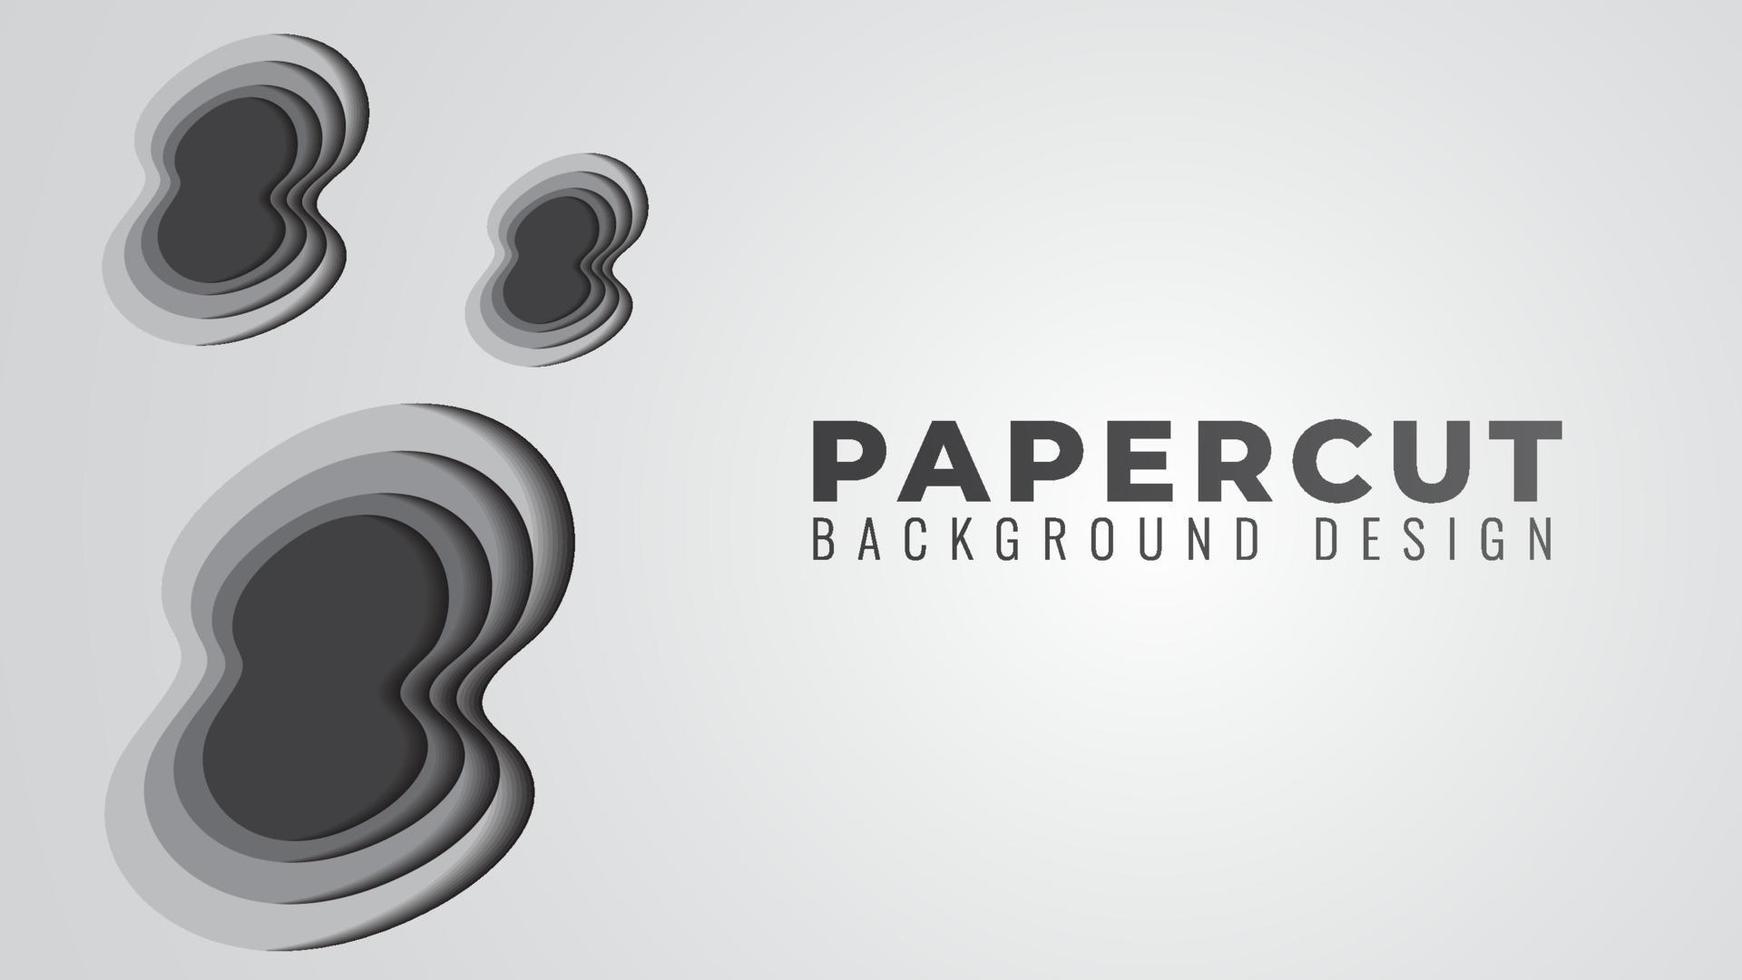 ilustración de vector de capas de corte de papel monocromáticas. plantilla de diseño de fondo abstracto. tema de color gris. estilo de diseño simple y limpio